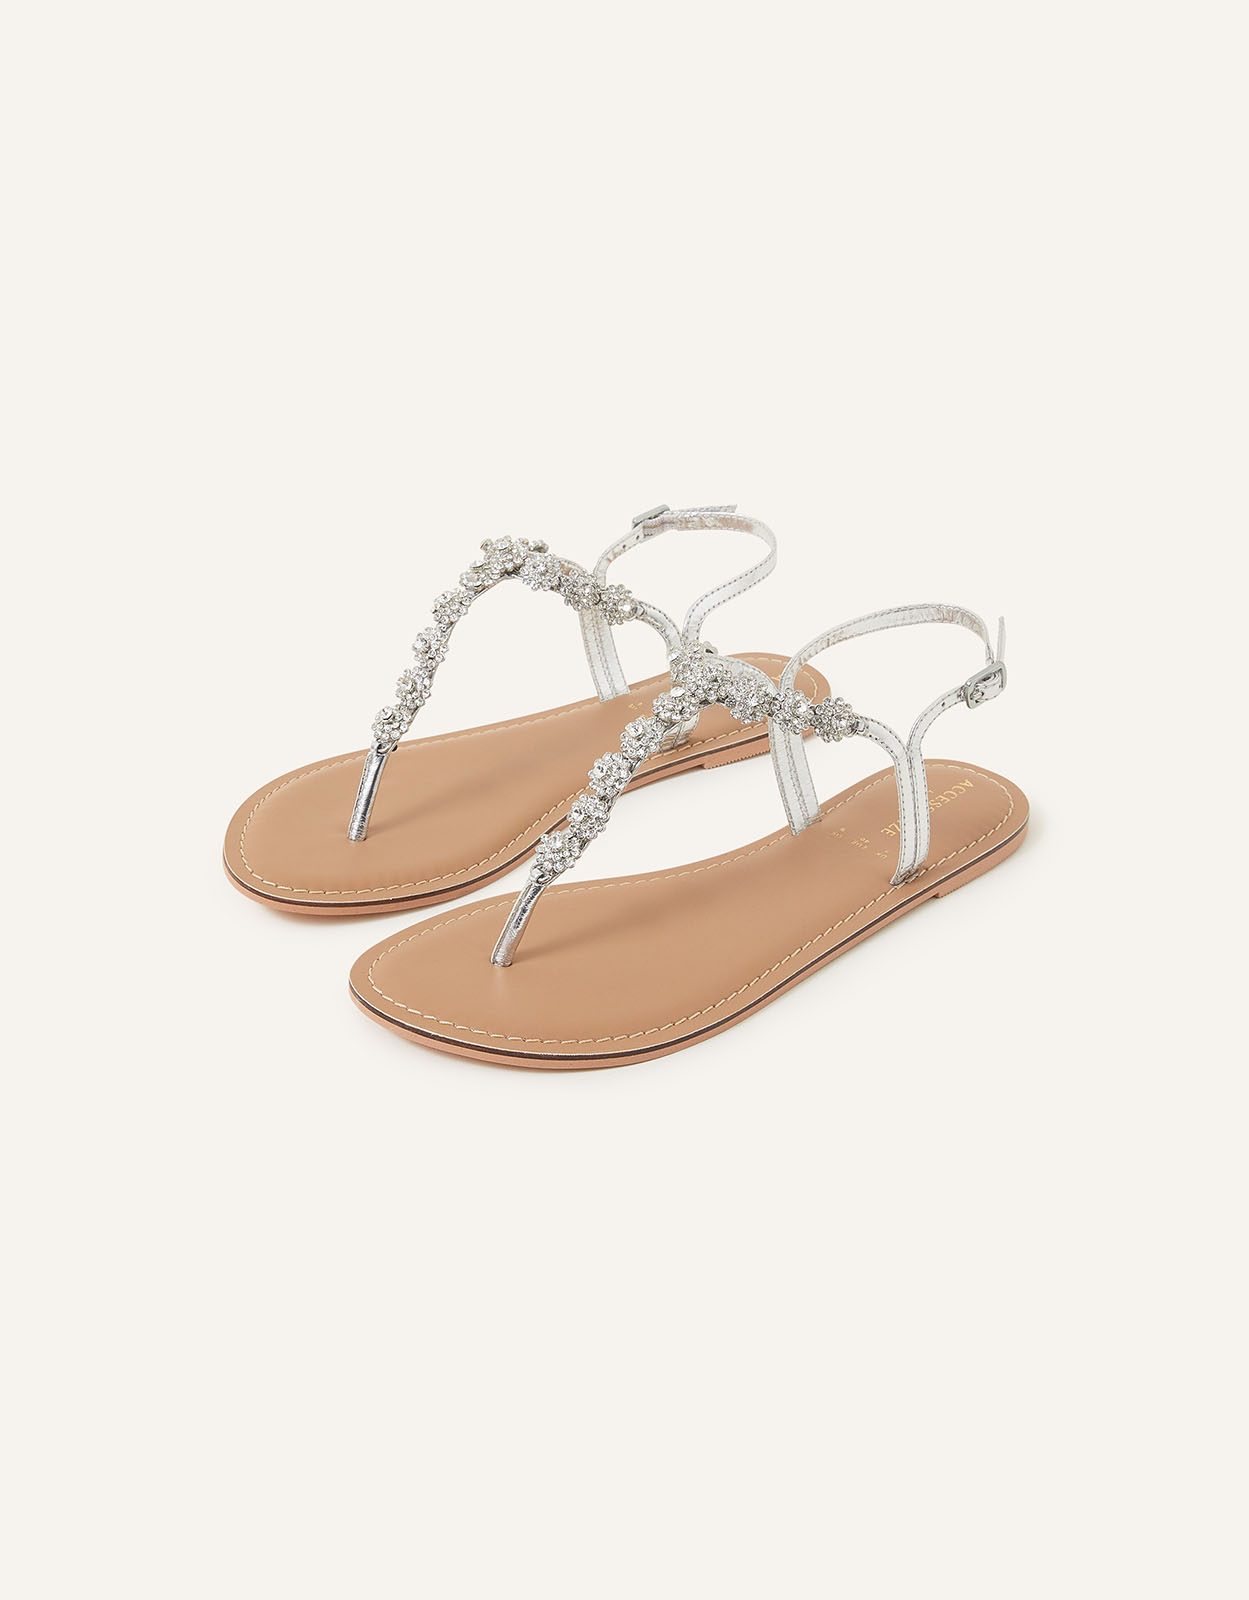 Accessorize Women's Reno Sparkle Diamante Sandals Silver, Size: 39